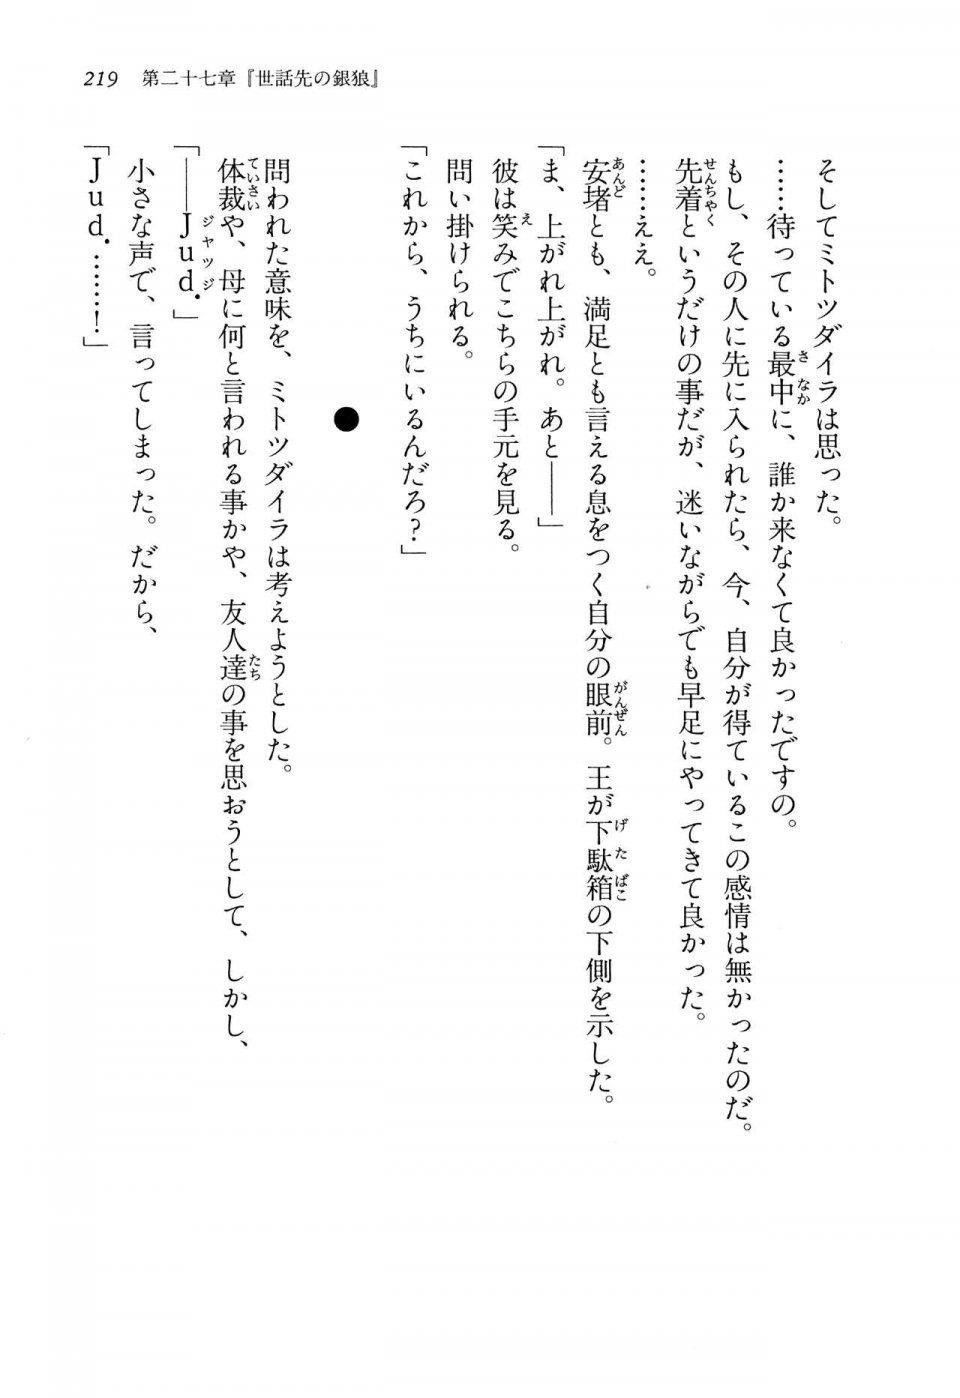 Kyoukai Senjou no Horizon LN Vol 14(6B) - Photo #219